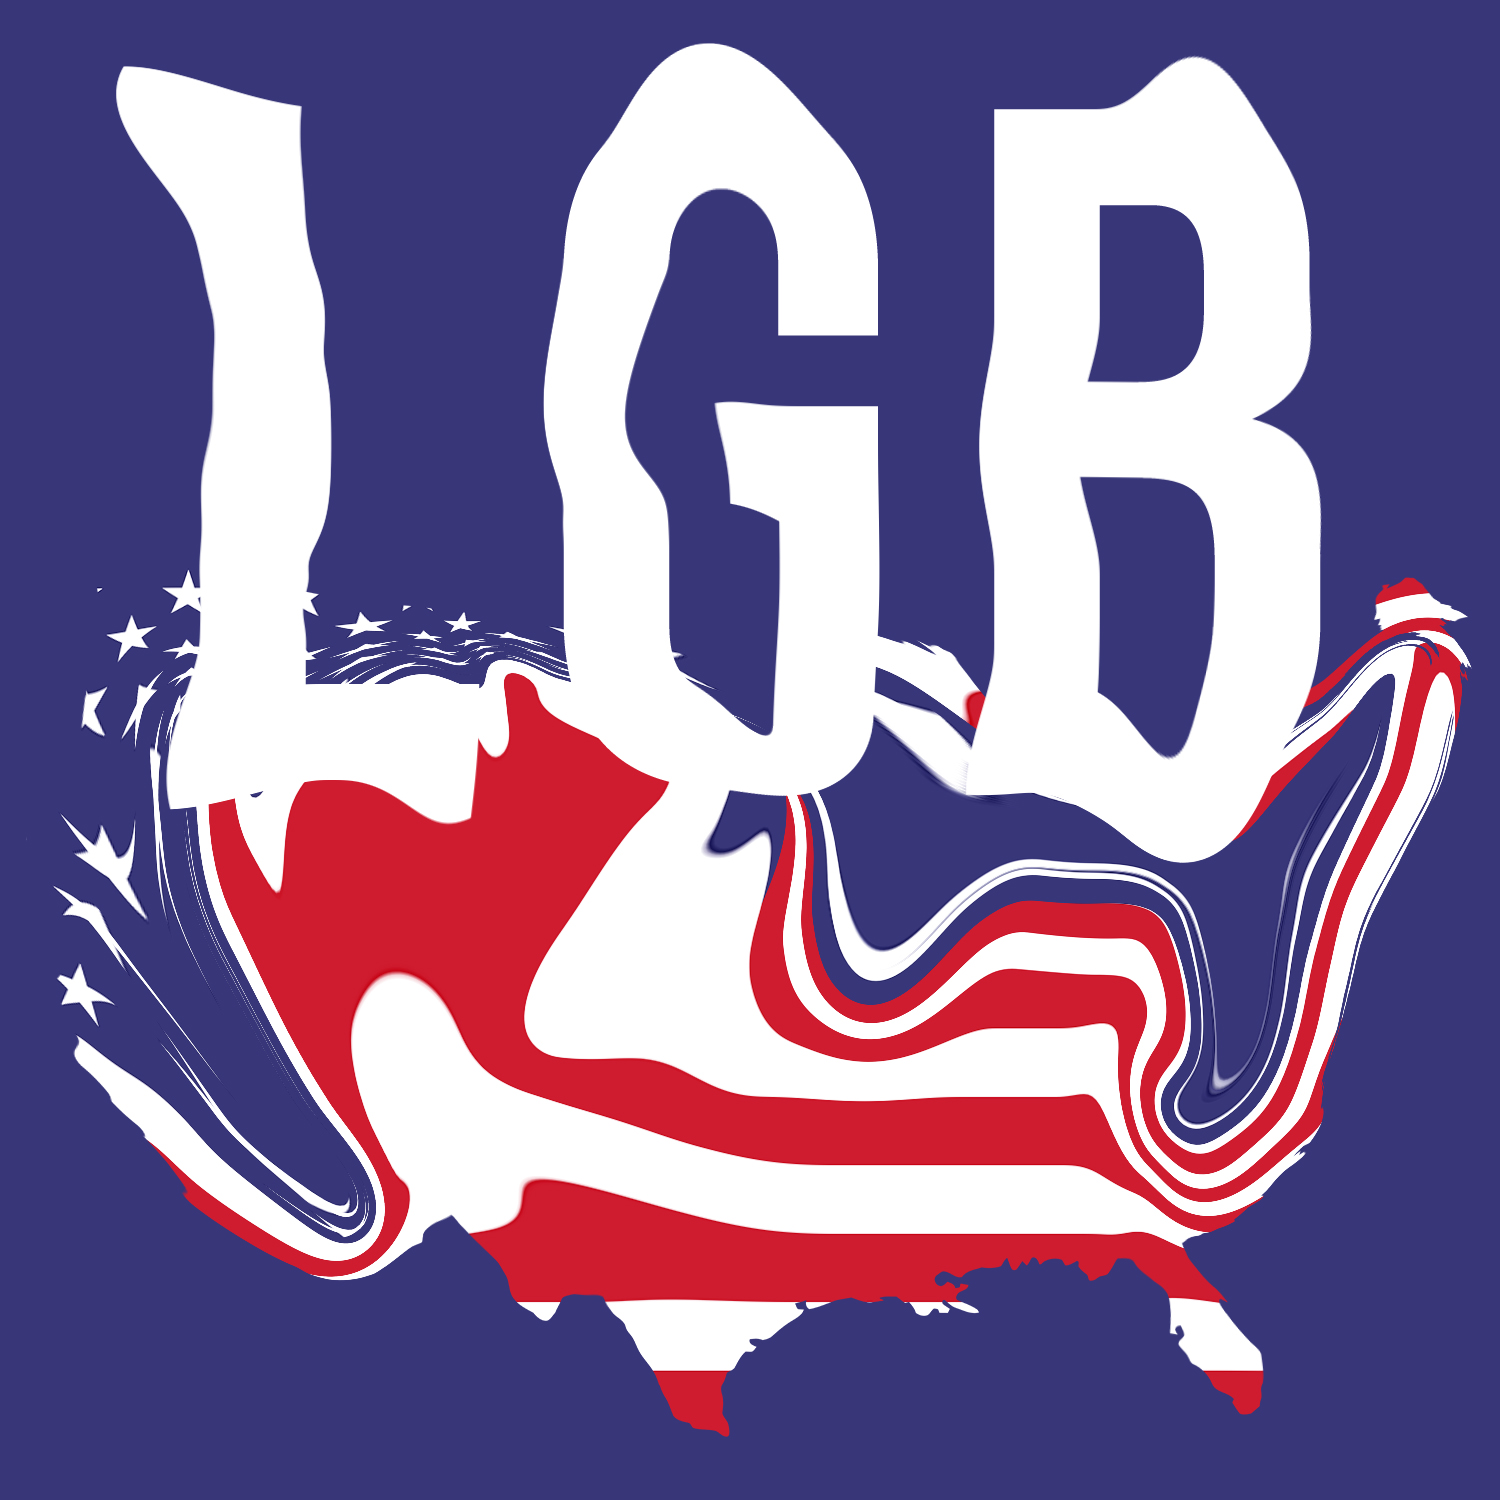 LGB Liberty